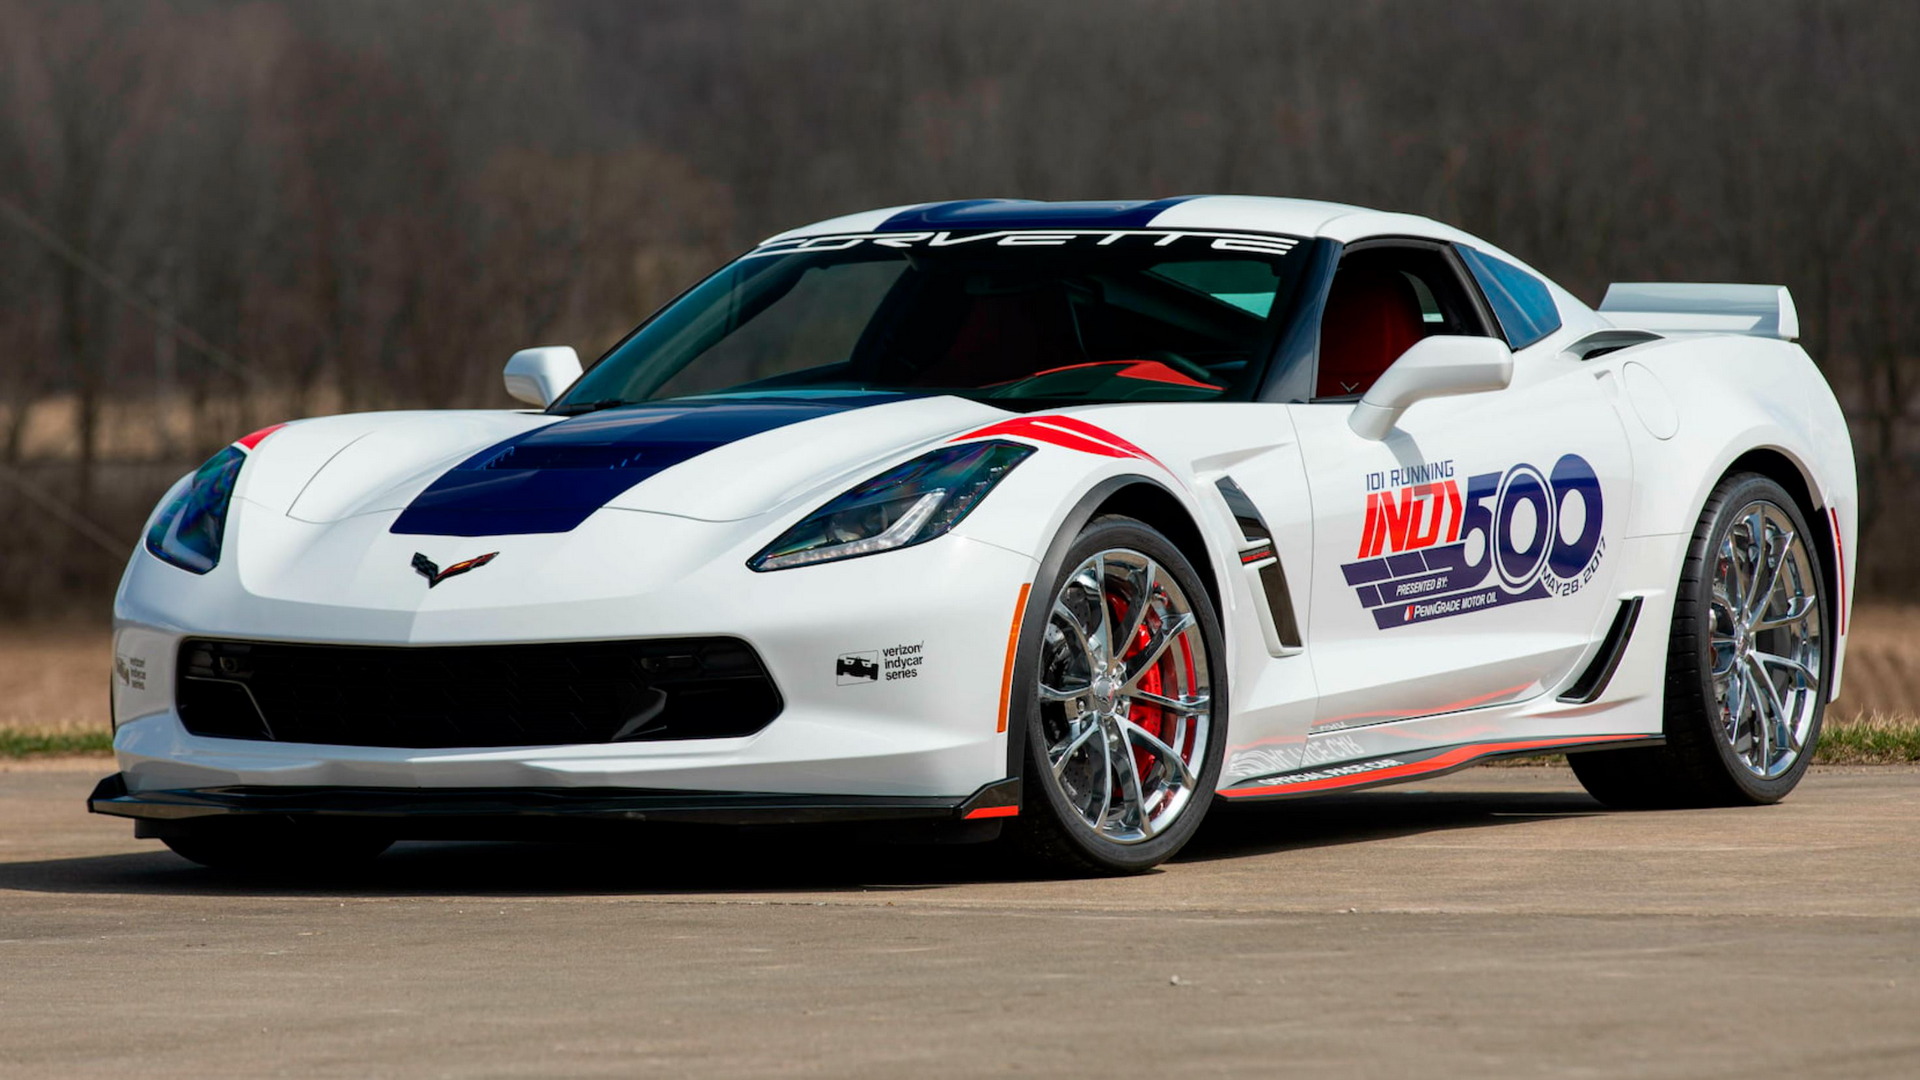 Lác mắt với bộ sưu tập siêu xe khổng lồ gồm 18 chiếc Corvette Pace 500 Indy rao bán tại Mecum - Ảnh 6.